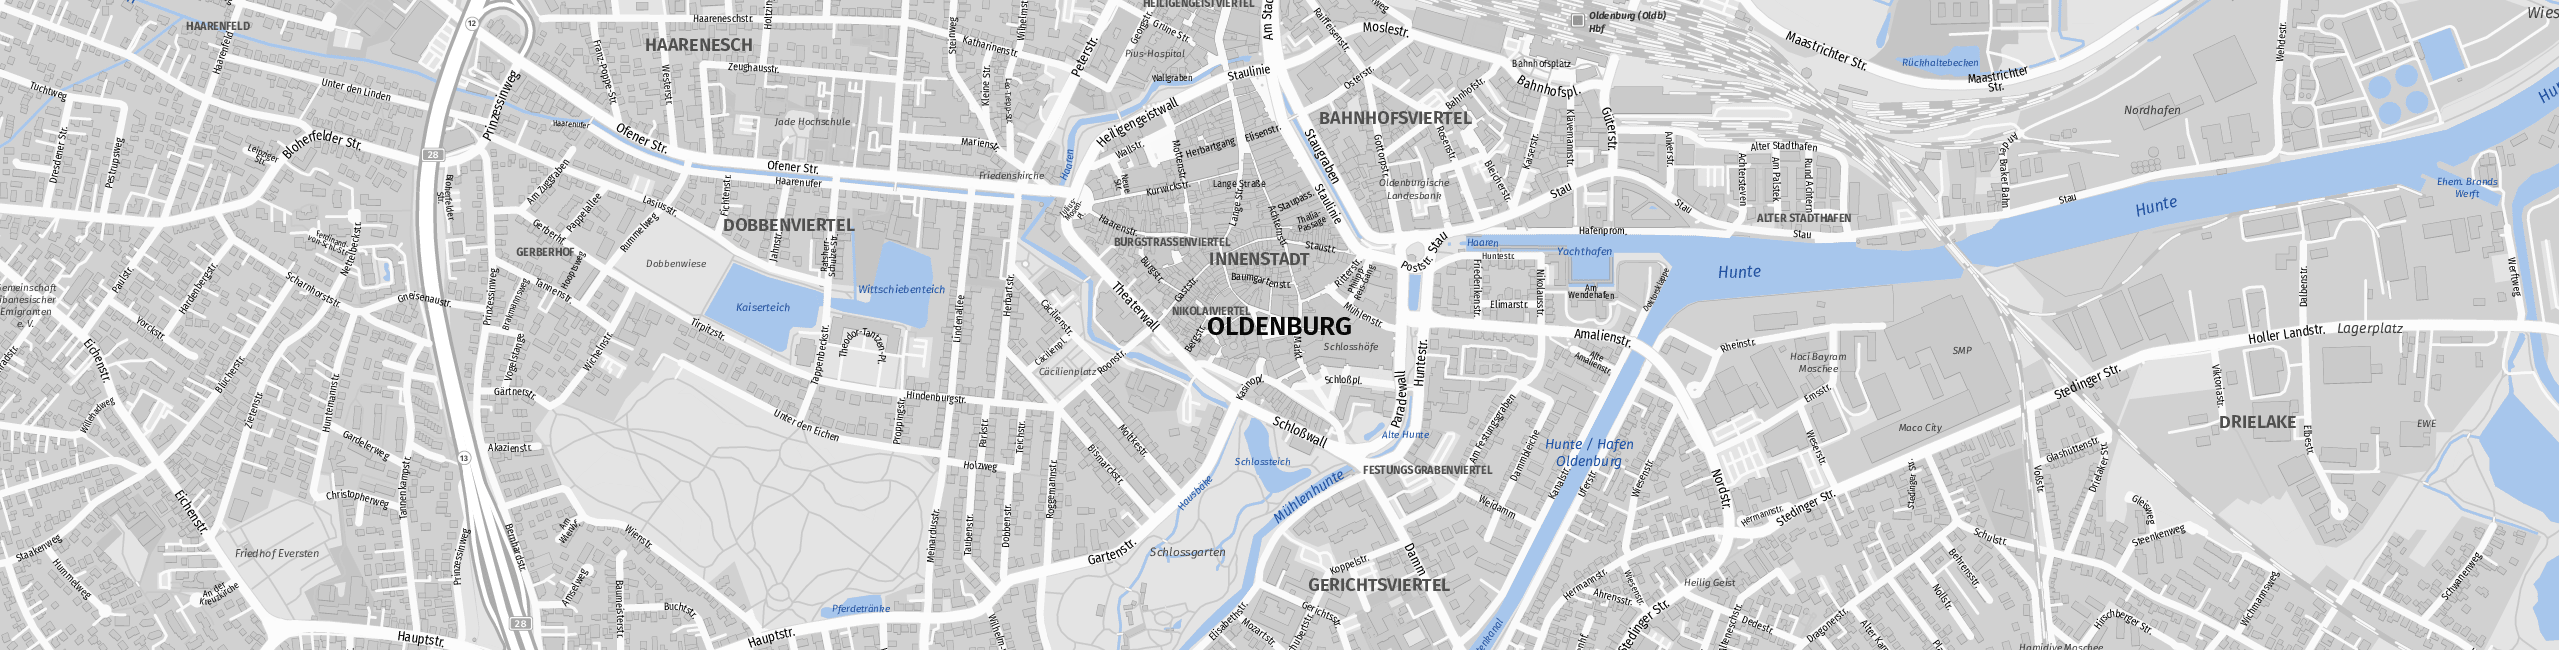 Stadtplan Oldenburg zum Downloaden.